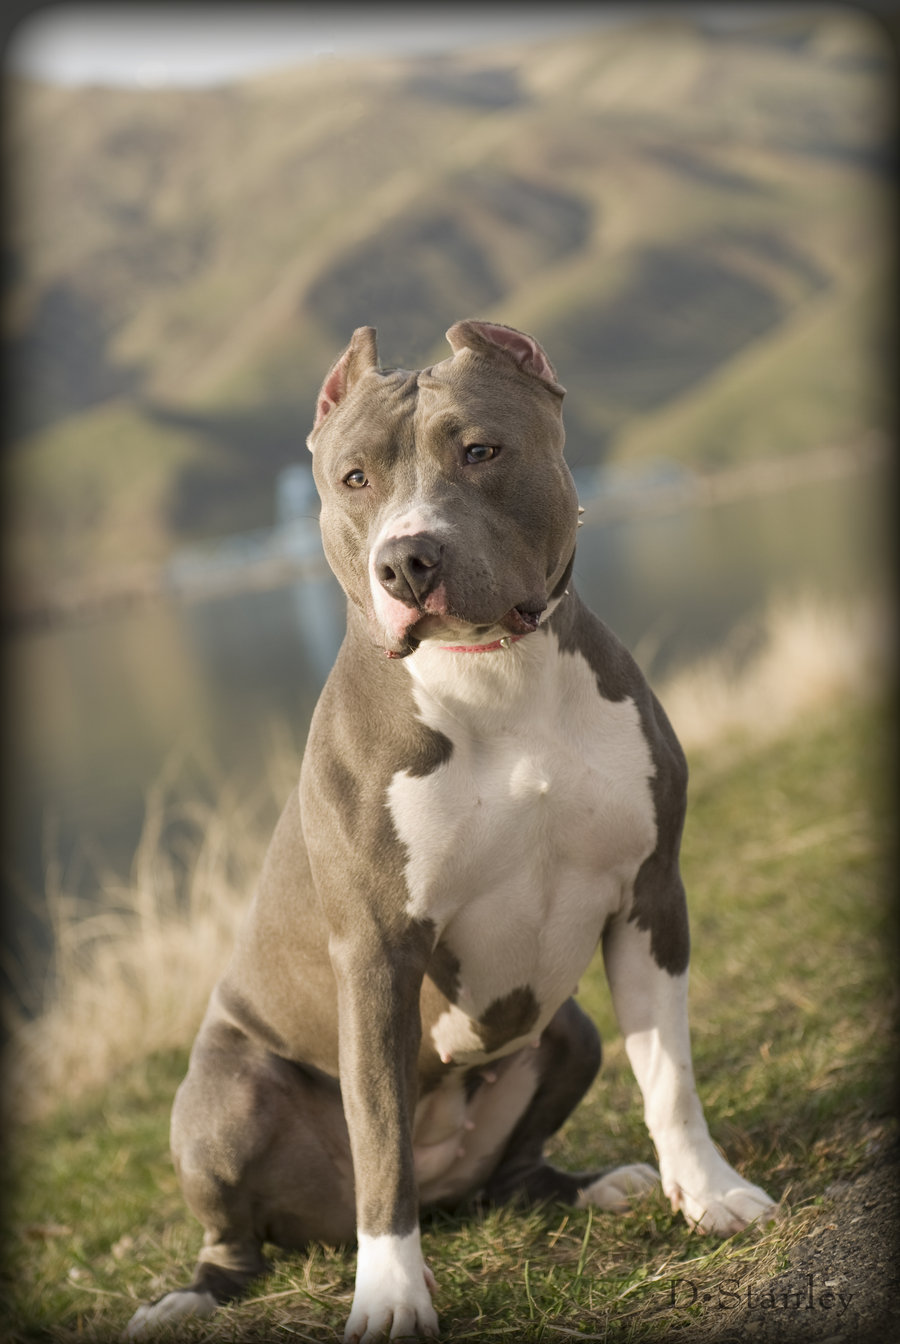 90.000+ ảnh đẹp nhất về Chó Pitbull · Tải xuống miễn phí 100% · Ảnh có sẵn  của Pexels